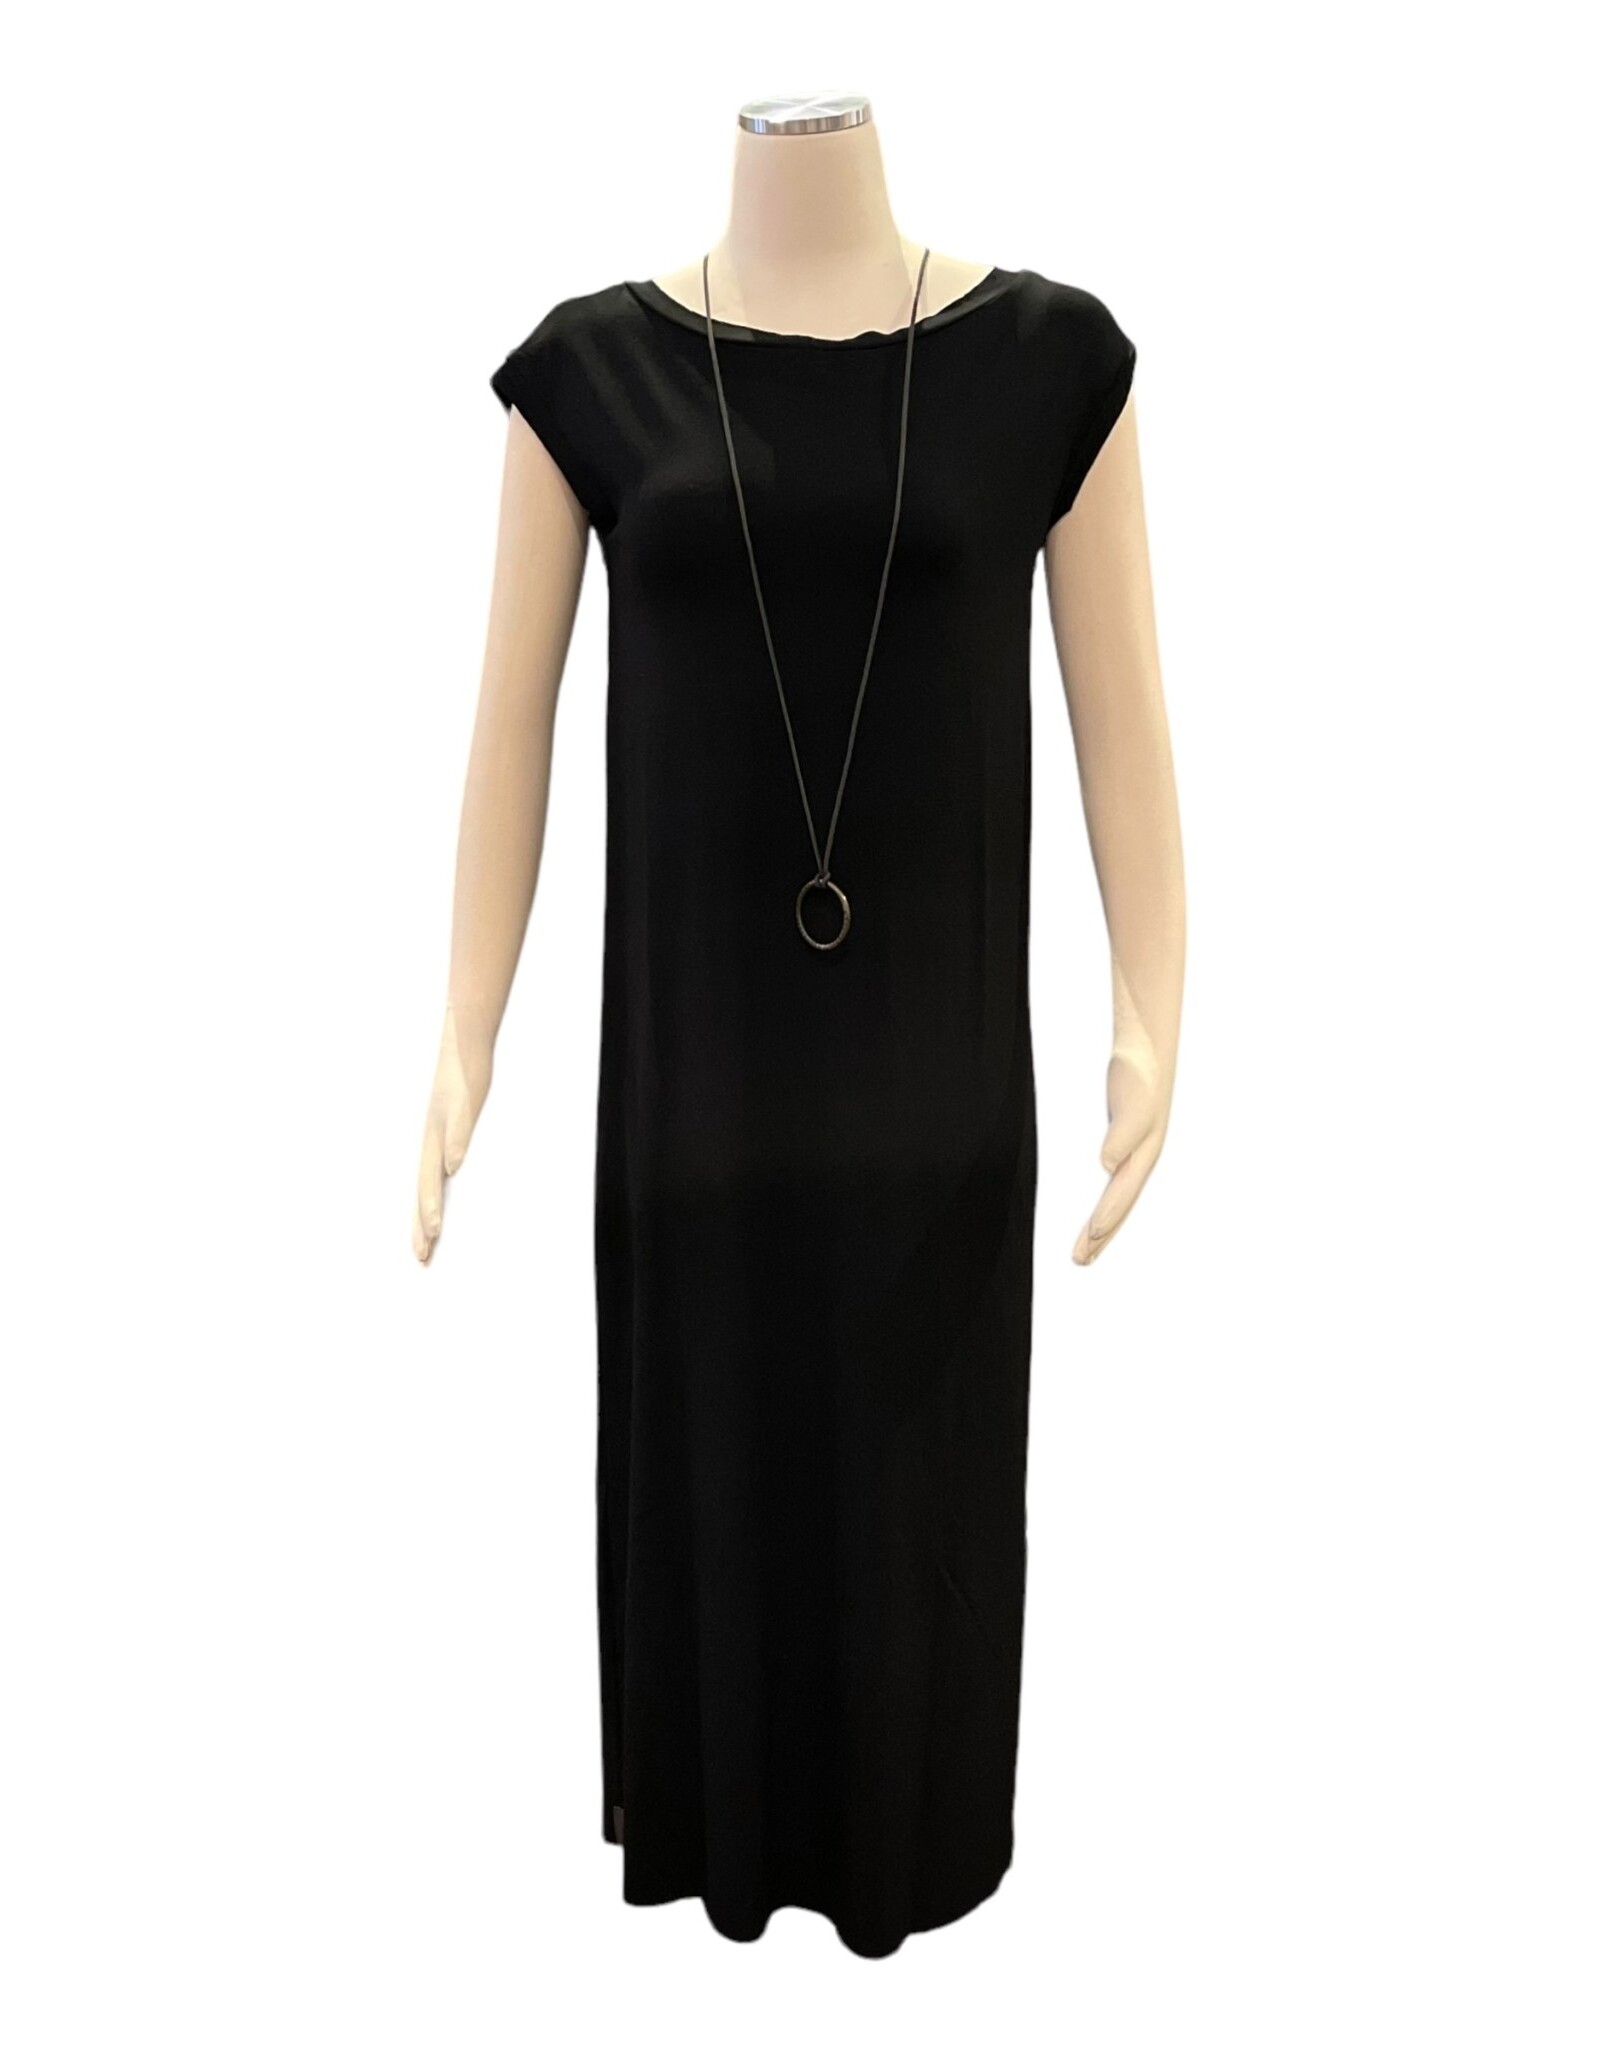 Henriette Steffensen Dress w/jewelry 98055